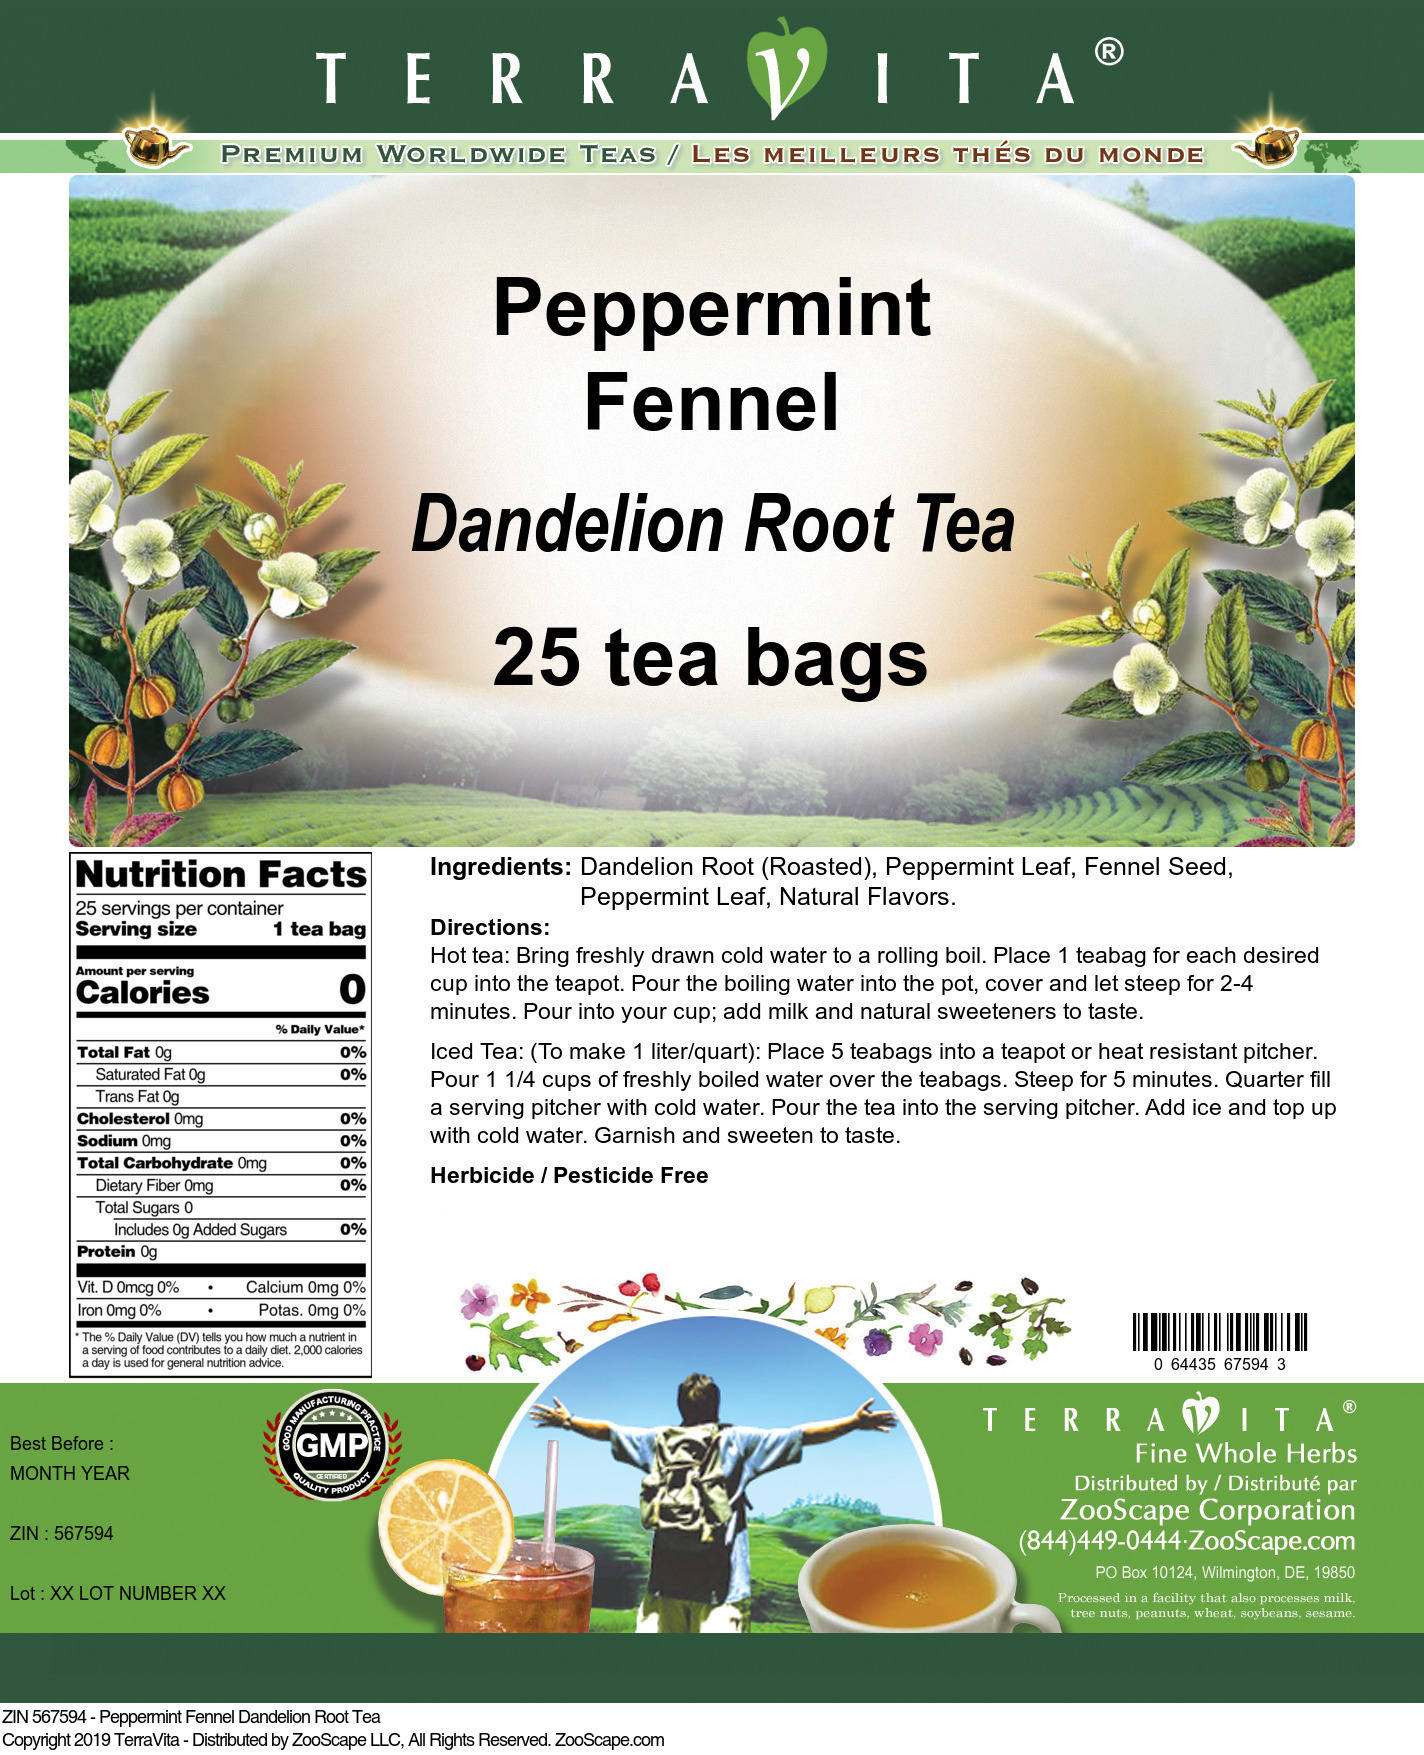 Peppermint Fennel Dandelion Root Tea - Label